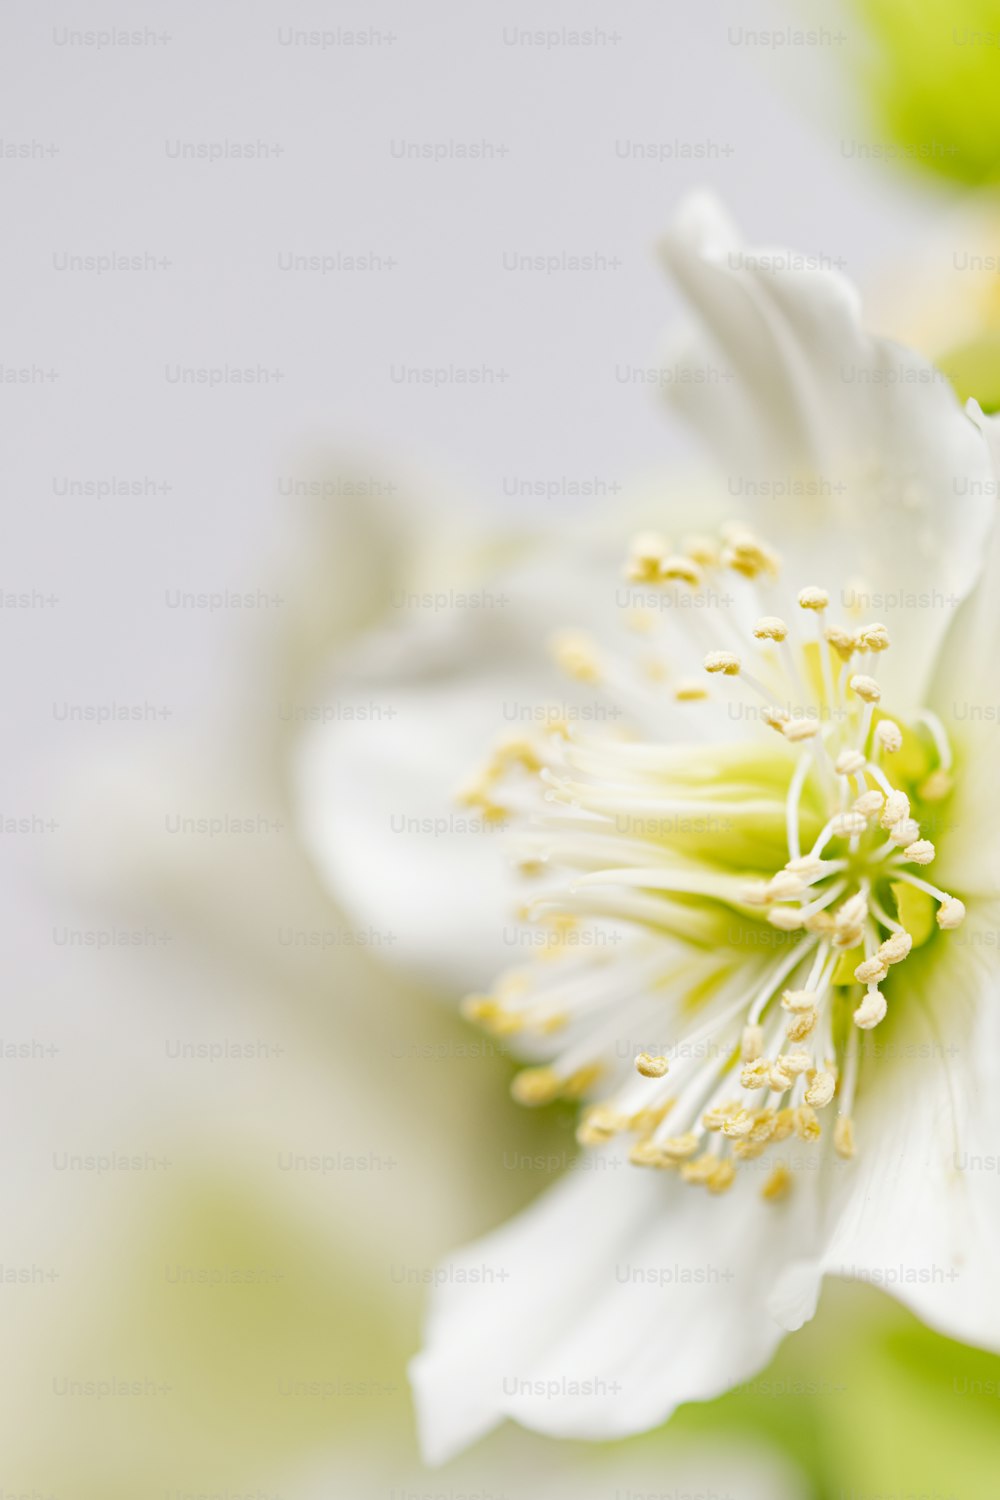 Un primer plano de una flor blanca sobre un fondo blanco